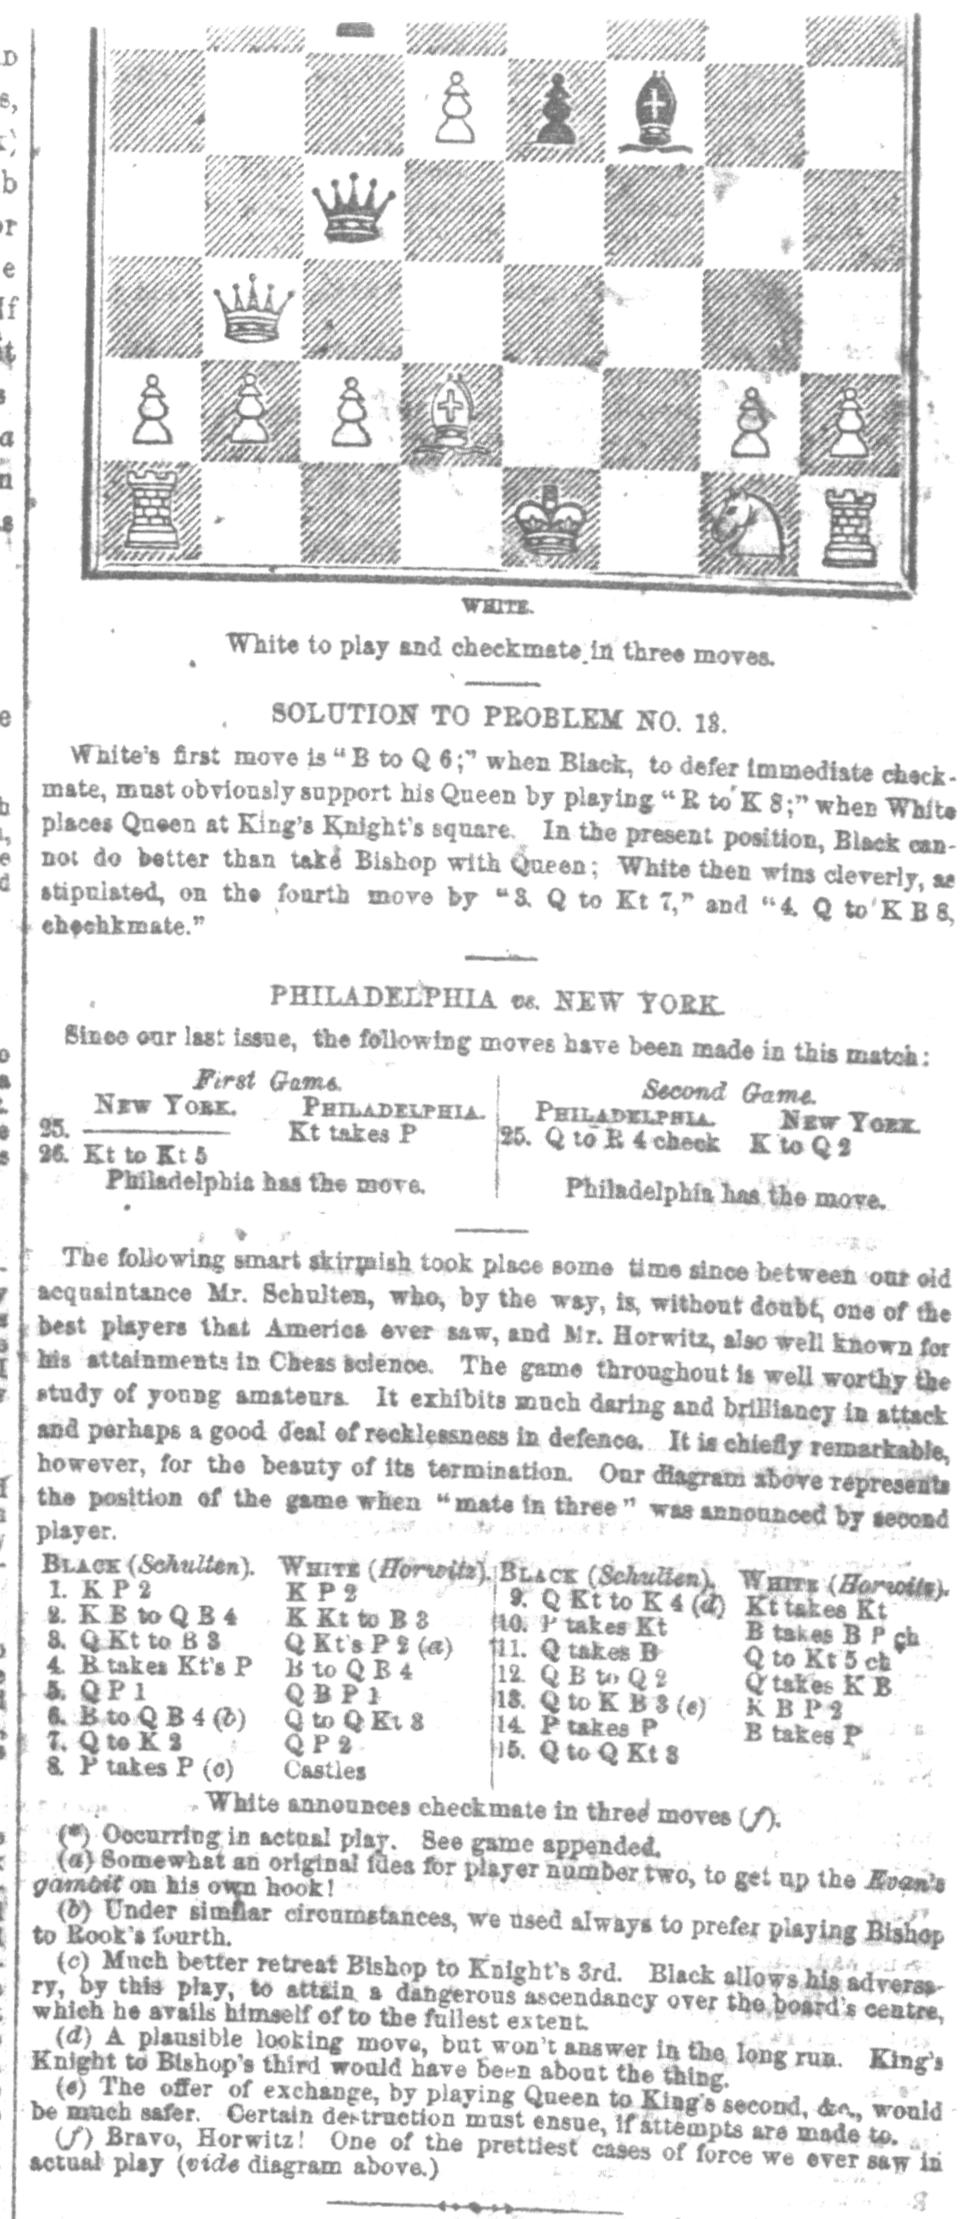 1856.12.06-02 Porter's Spirit of the Times.jpg